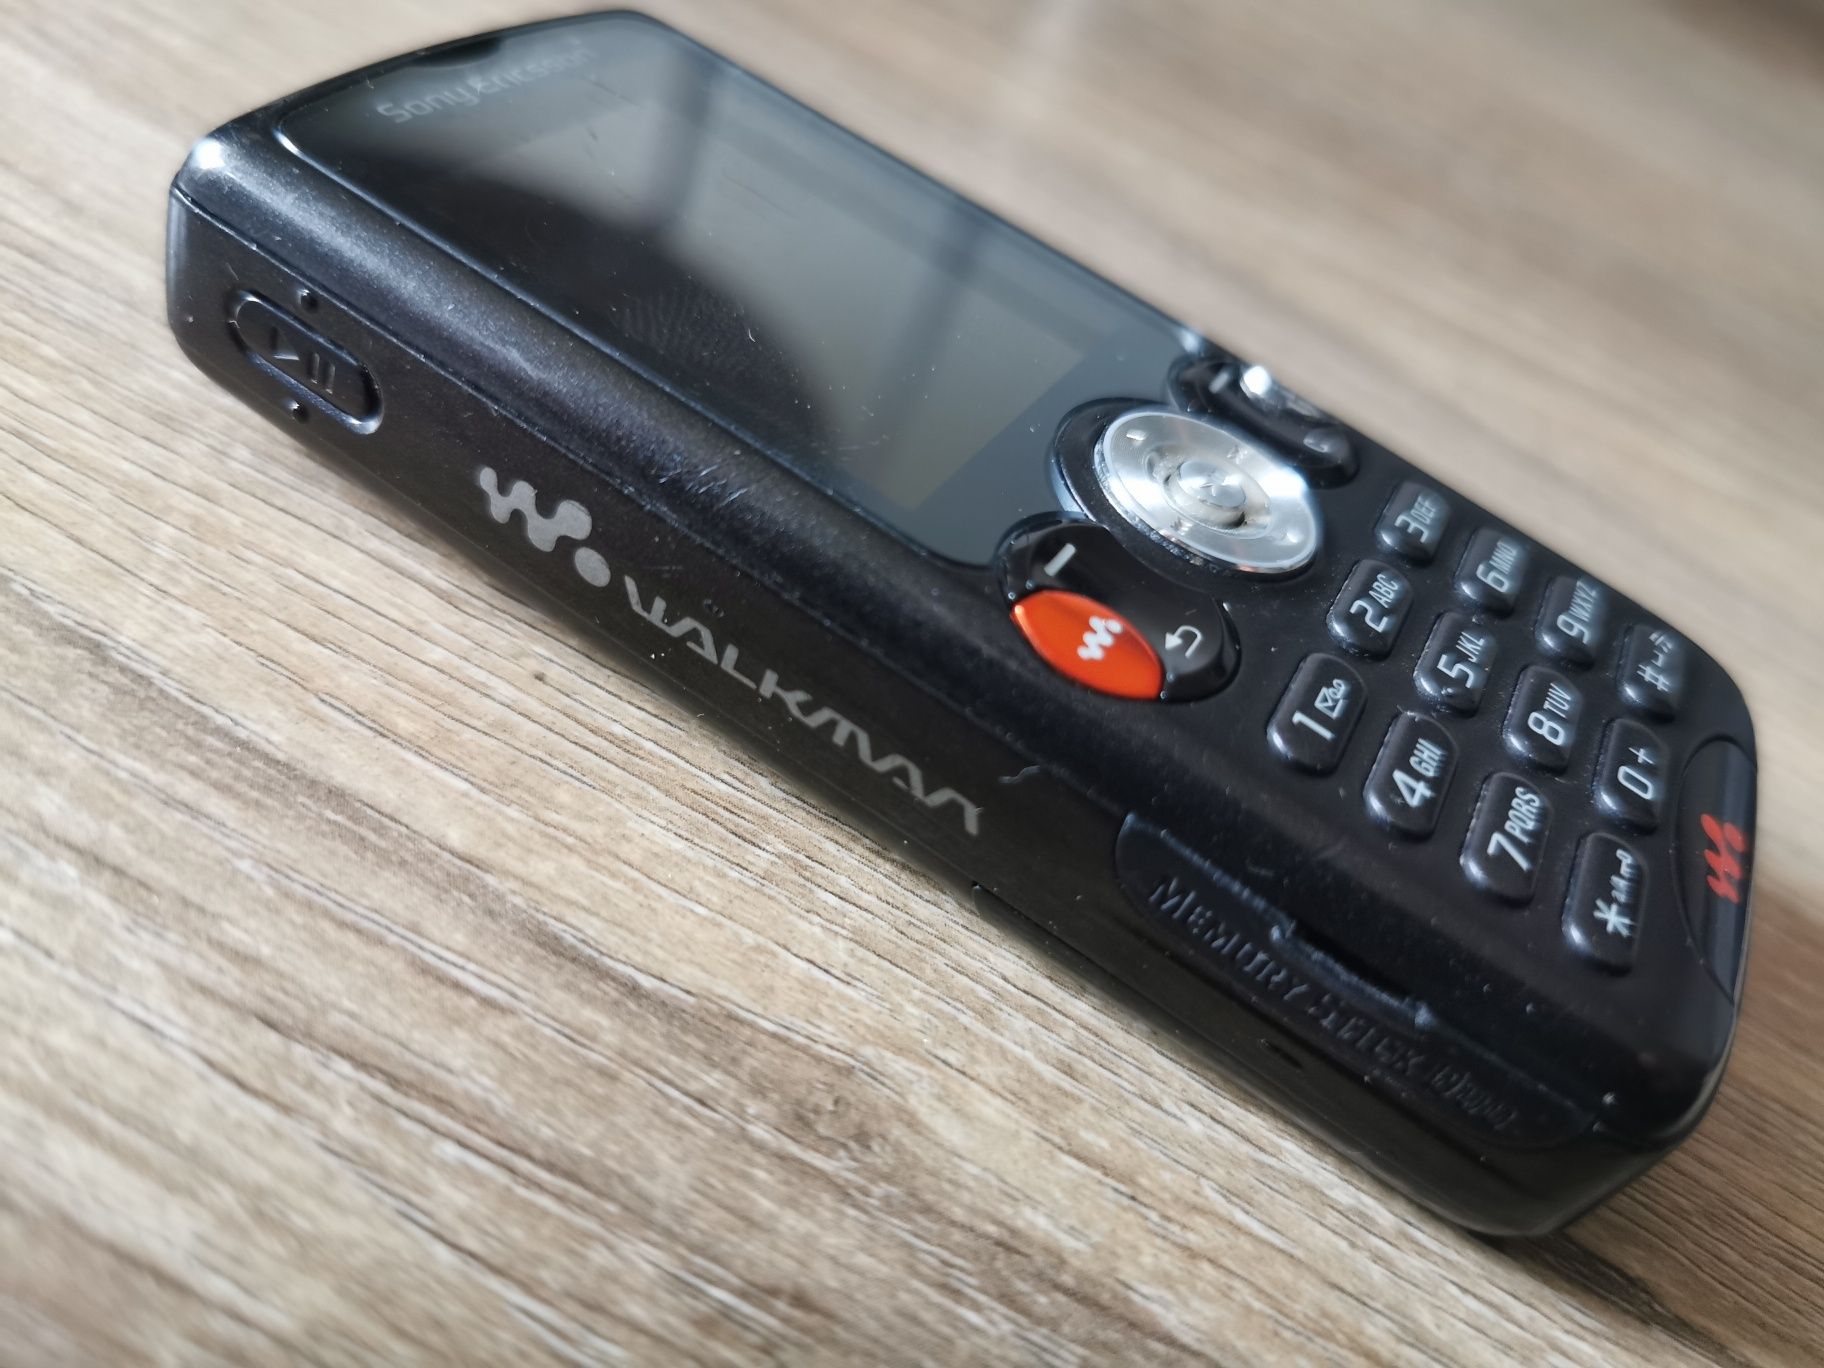 Sony Ericsson W810i walkman